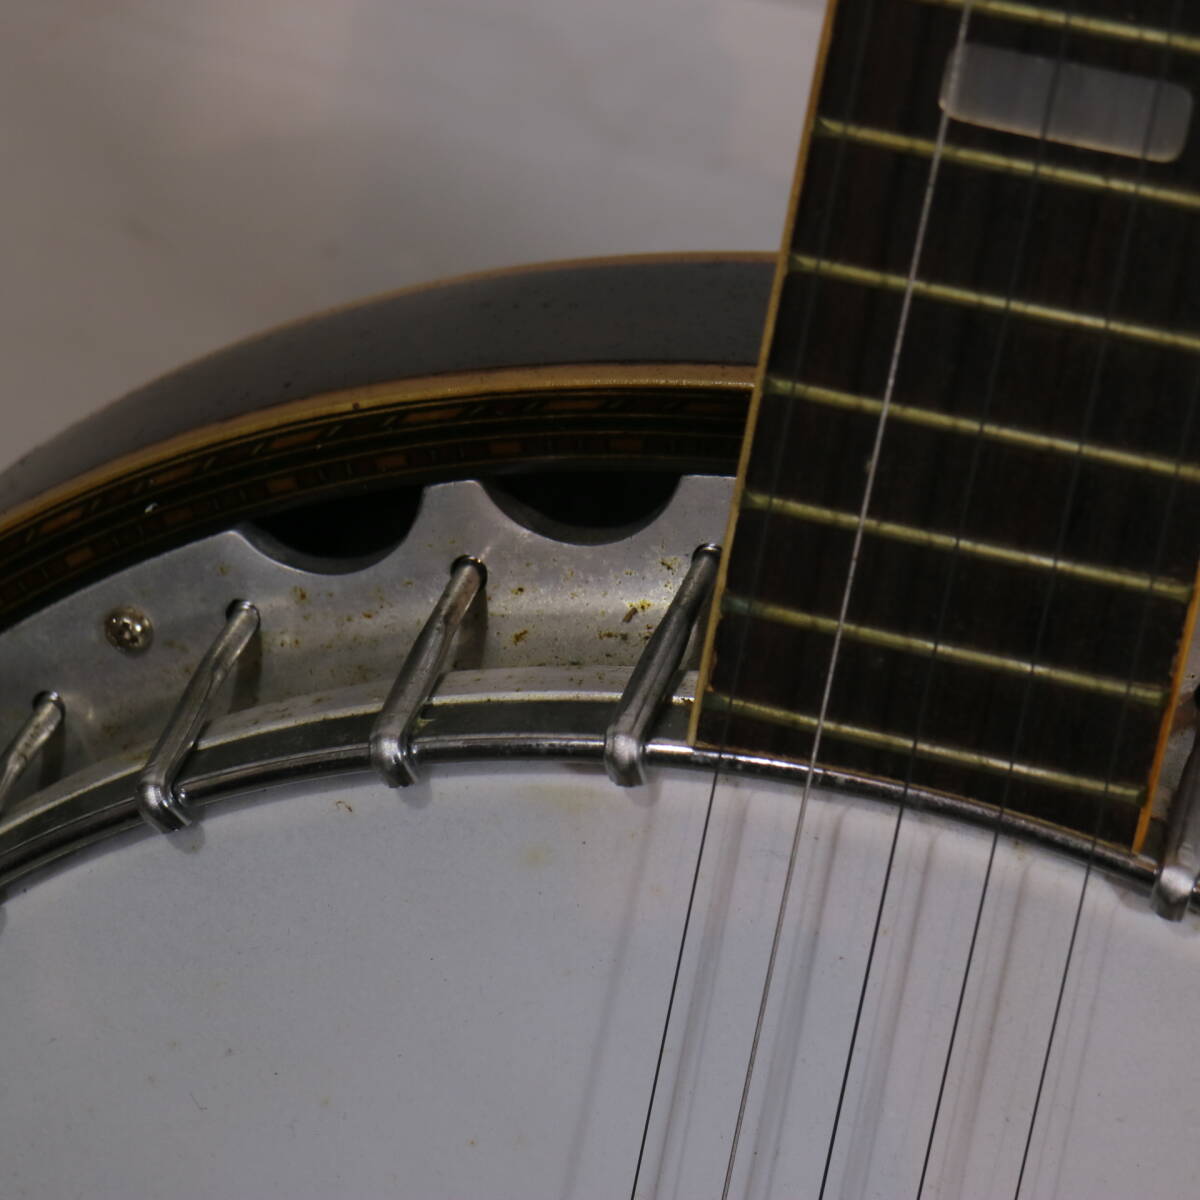 Pirles Piaa отсутствует 5strings 5 струна банджо сделано в Японии жесткий чехол специальный с ремешком . этнический музыкальный инструмент Vintage Morris . рисовое поле музыкальные инструменты текущее состояние товар б/у 